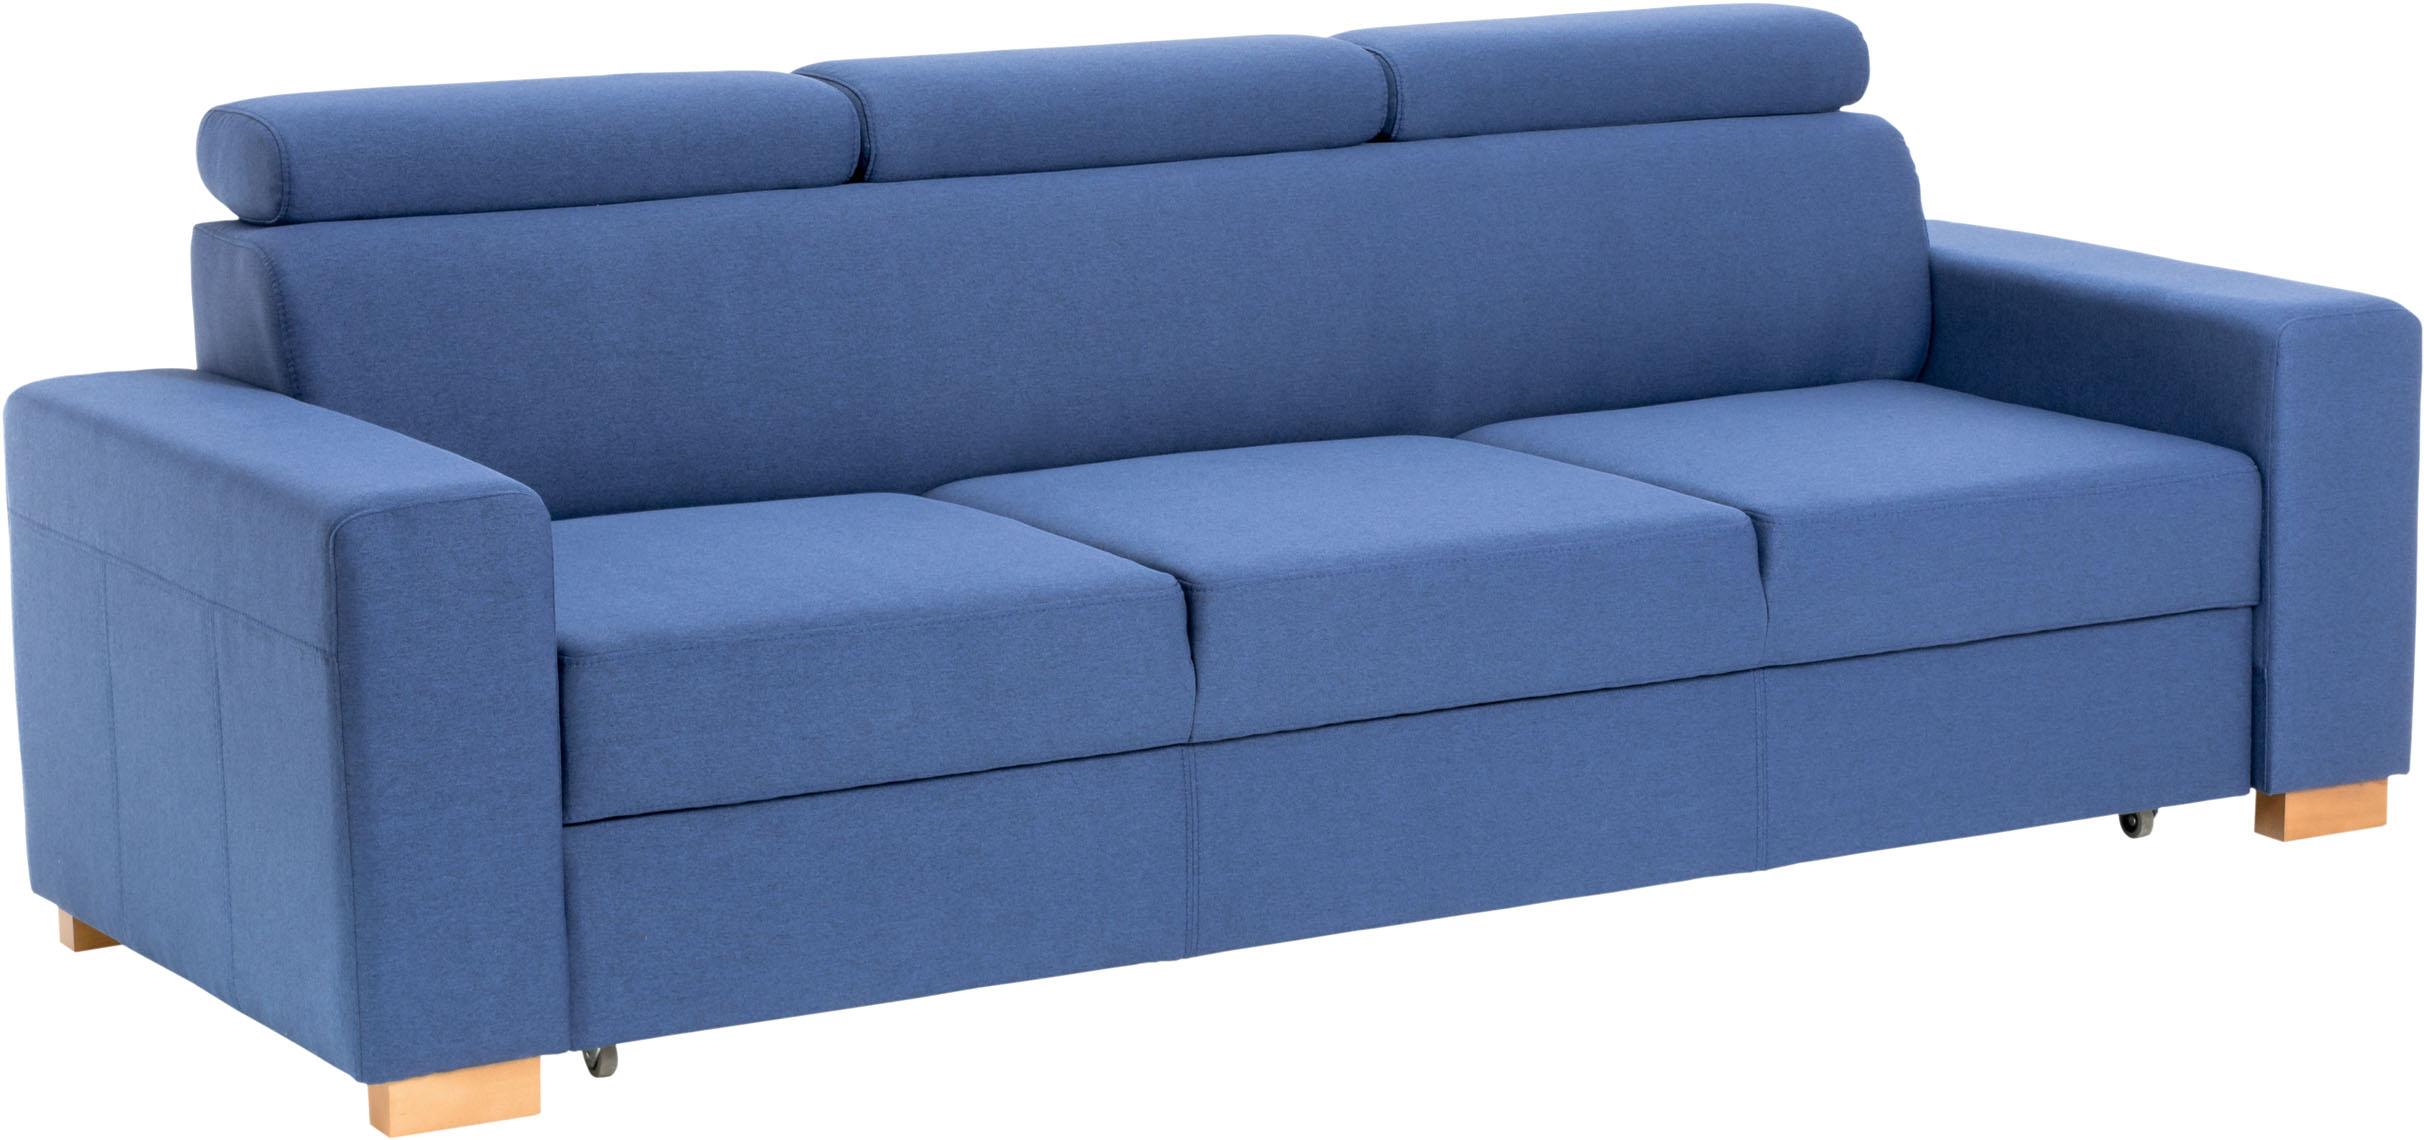 3,5-seat sofa bed Milton